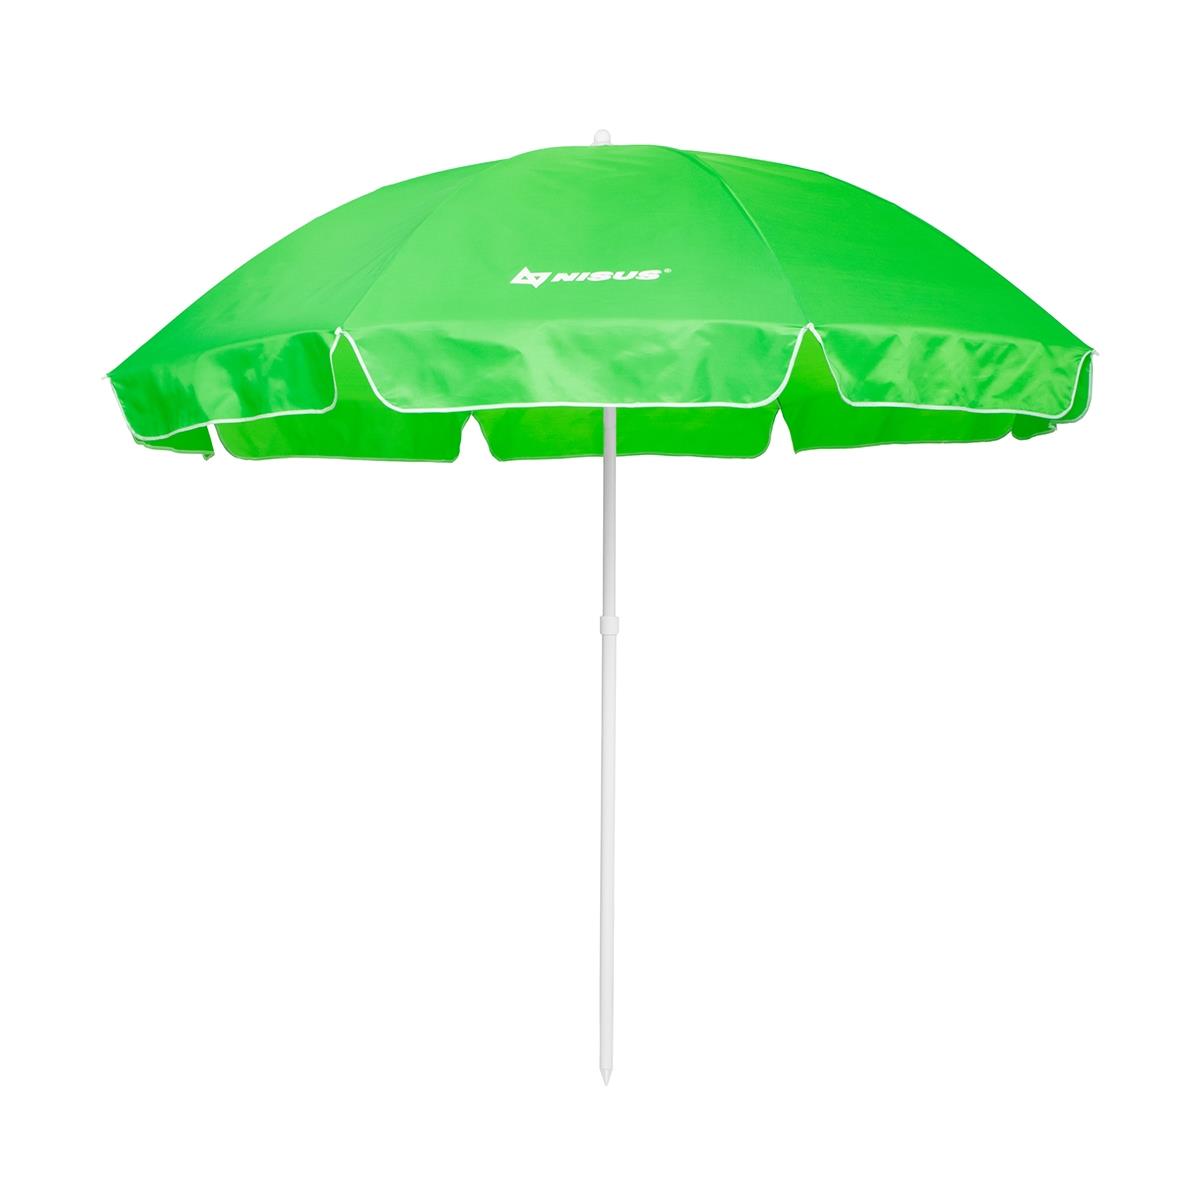 Зонт пляжный Ø 2 м N-240 Nisus зонт пляжный d 2 00м с наклоном 28 32 210d na 200n g nisus